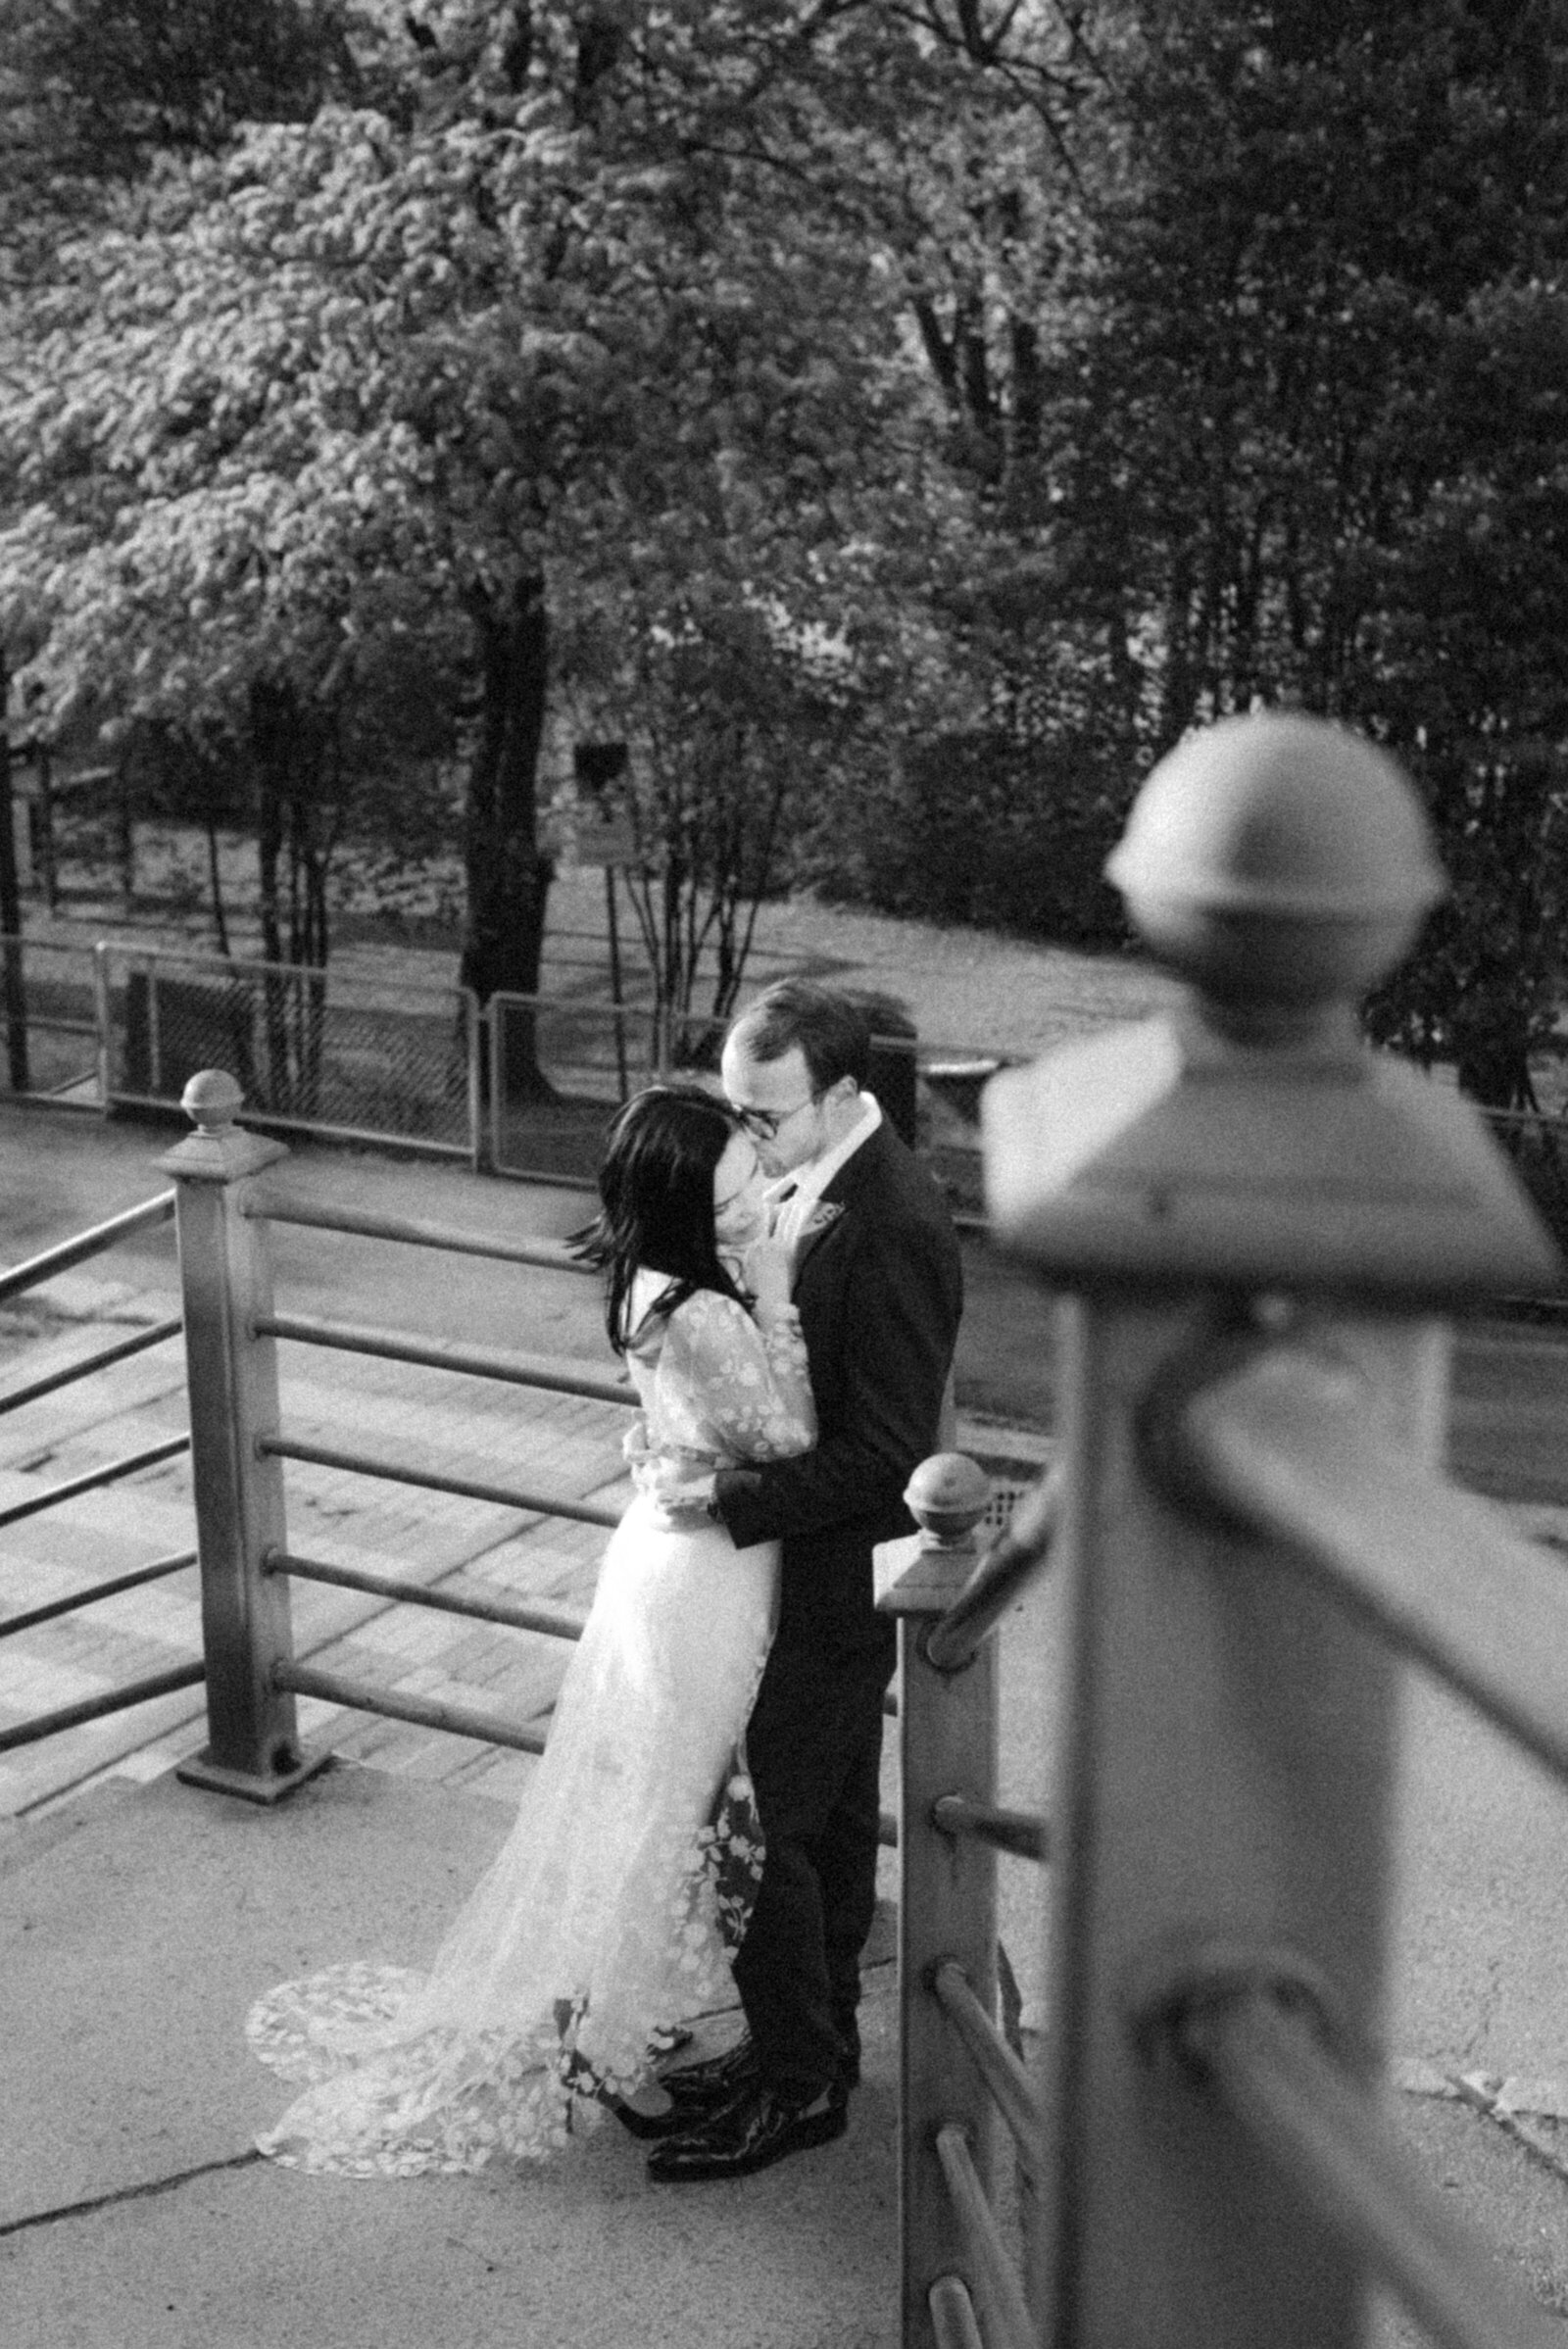 hääkuvaaja Hannika Gabrielssonin ikuistama romanttinen hääkuva, jossa hääpari seisoo portailla. Sulhanen nojaa kaiteeseen ja hääpari halaa.